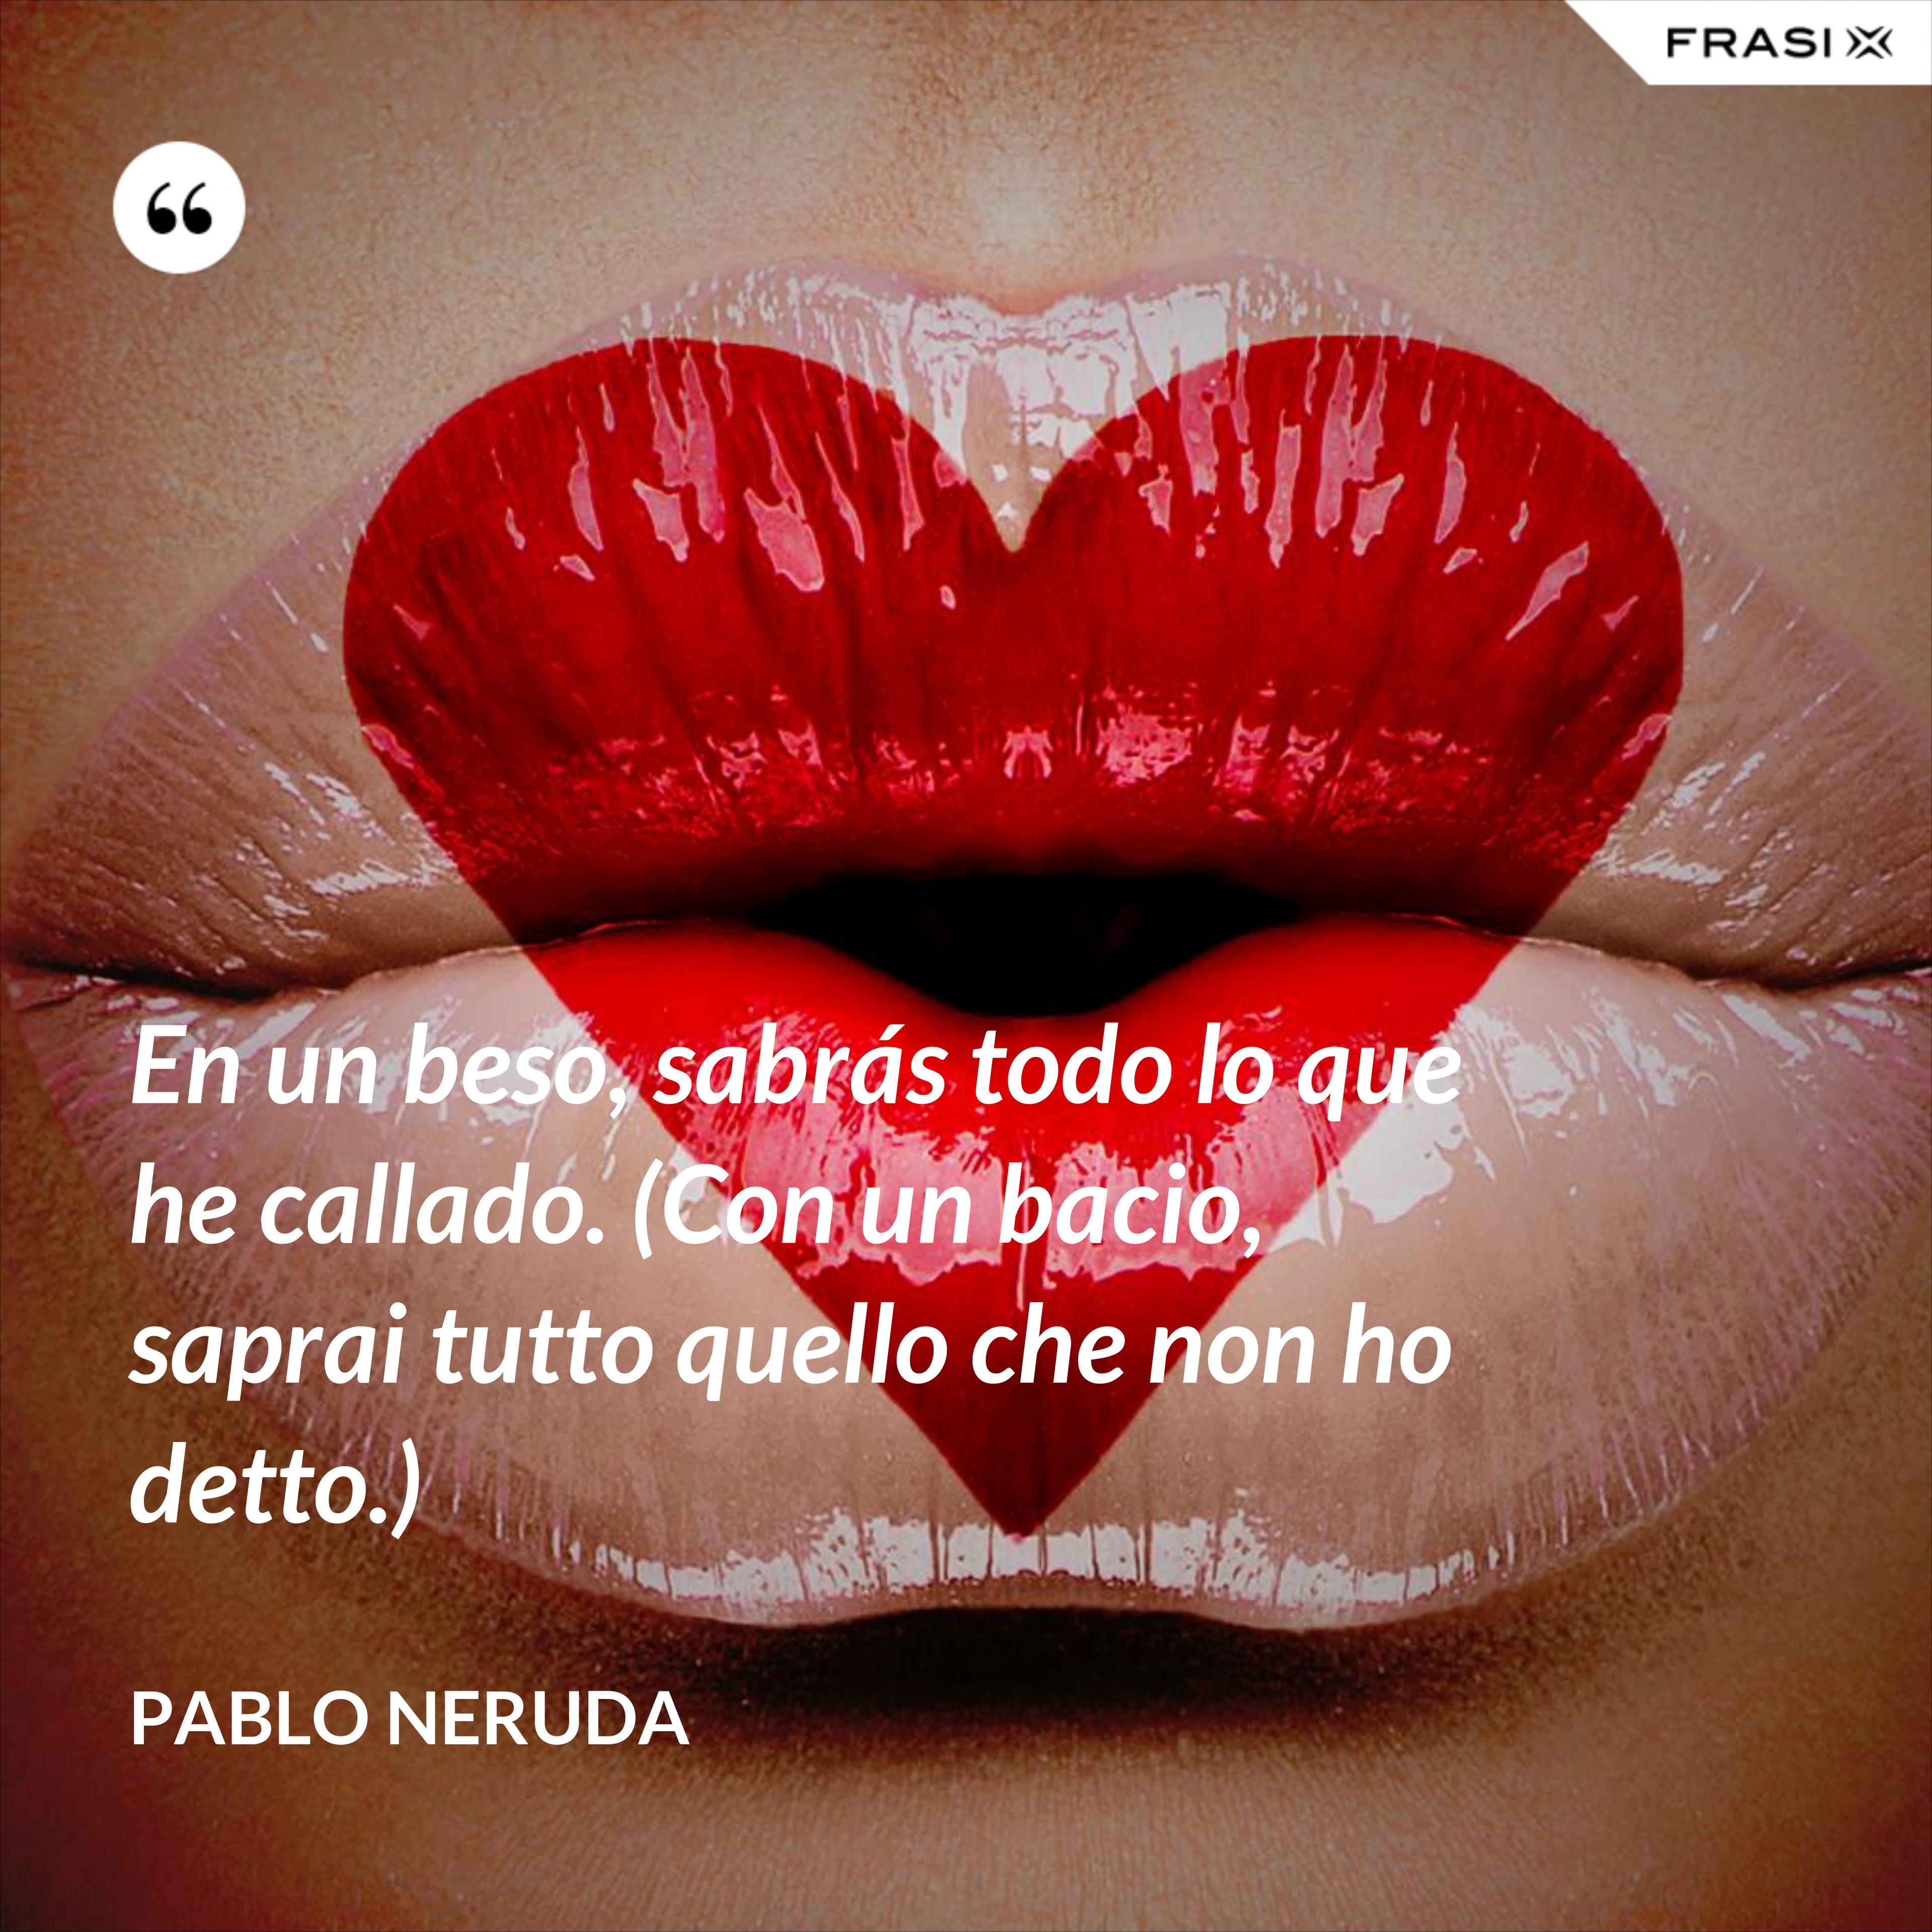 En un beso, sabrás todo lo que he callado. (Con un bacio, saprai tutto quello che non ho detto.) - Pablo Neruda